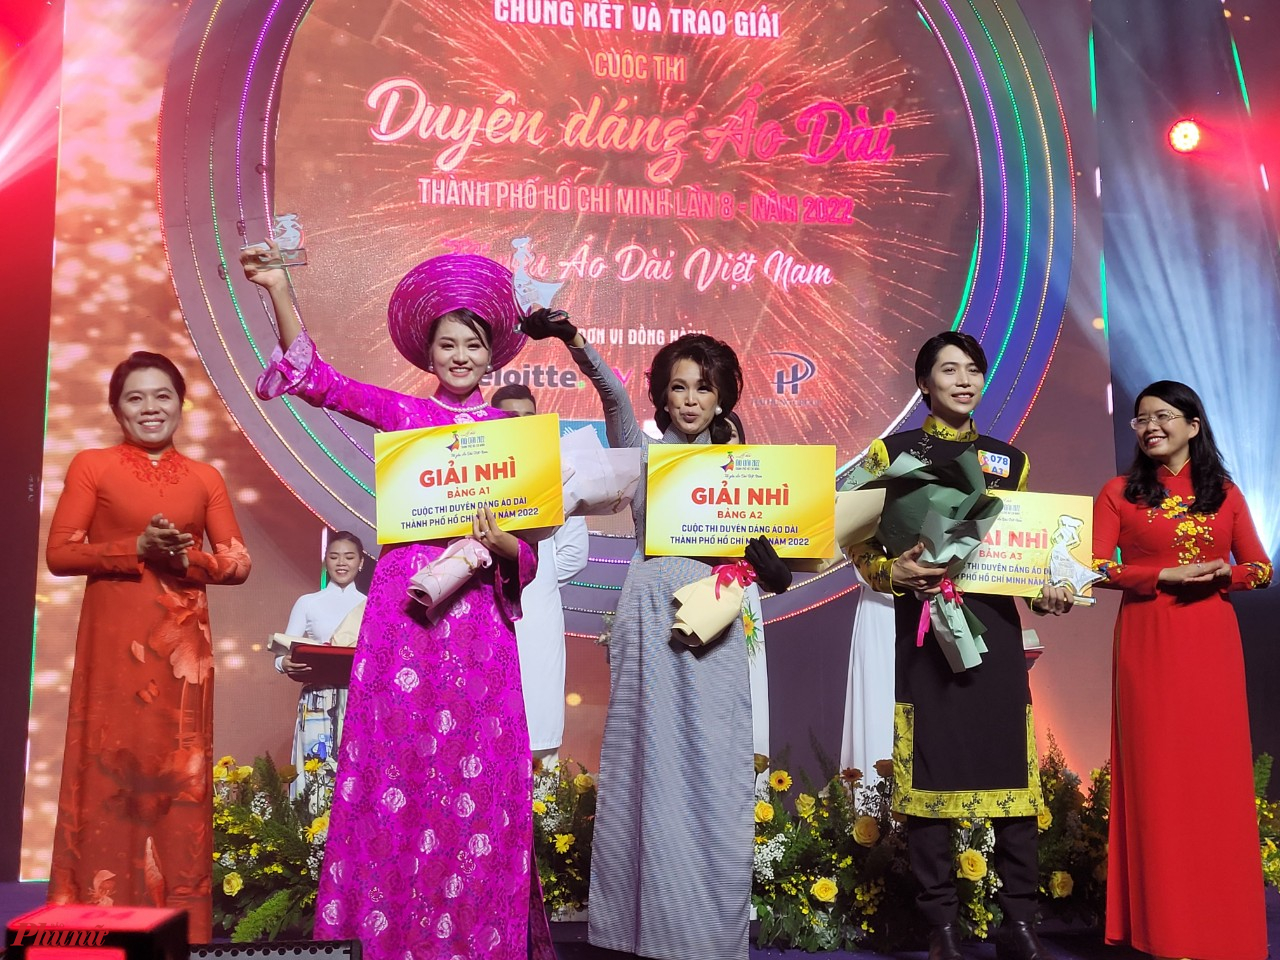 Bà Trần Nguyễn Phượng Trân và Nguyễn Thị Ánh Hoa - Phó Giám đốc sở du lịch Tp trao giải cho các thí sinh dự thi bảng cá nhân